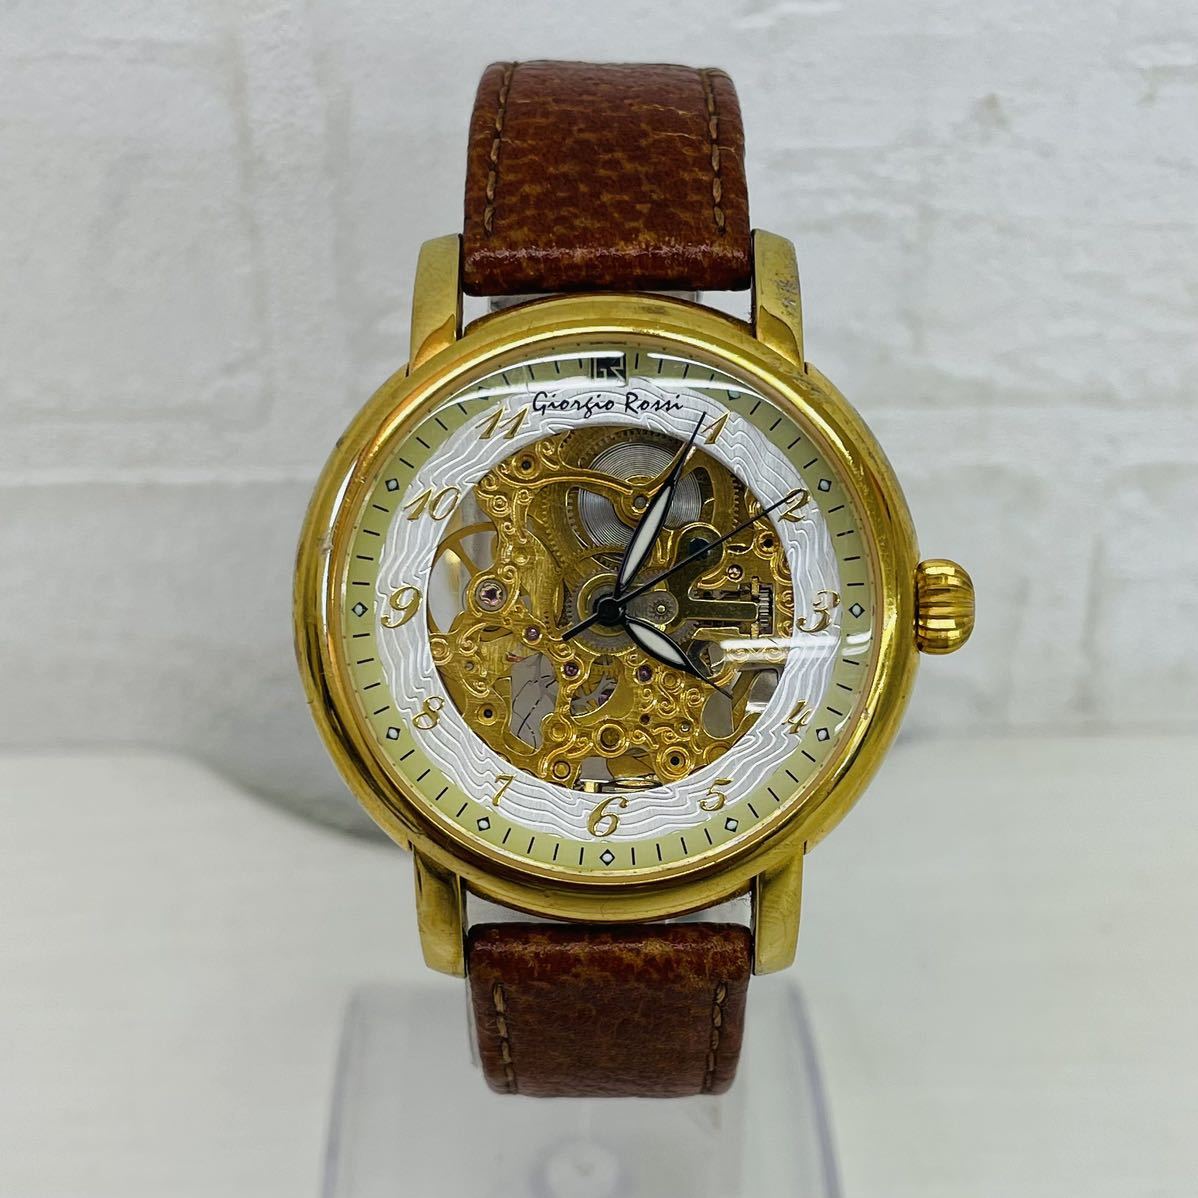 118 Giorgio Rossi ジョルジオロッシ GR0001 / GR5004 スケルトン メンズ腕時計 腕時計 時計 両面スケルトン 自動巻き 本革ベルト 防水 AT _画像1